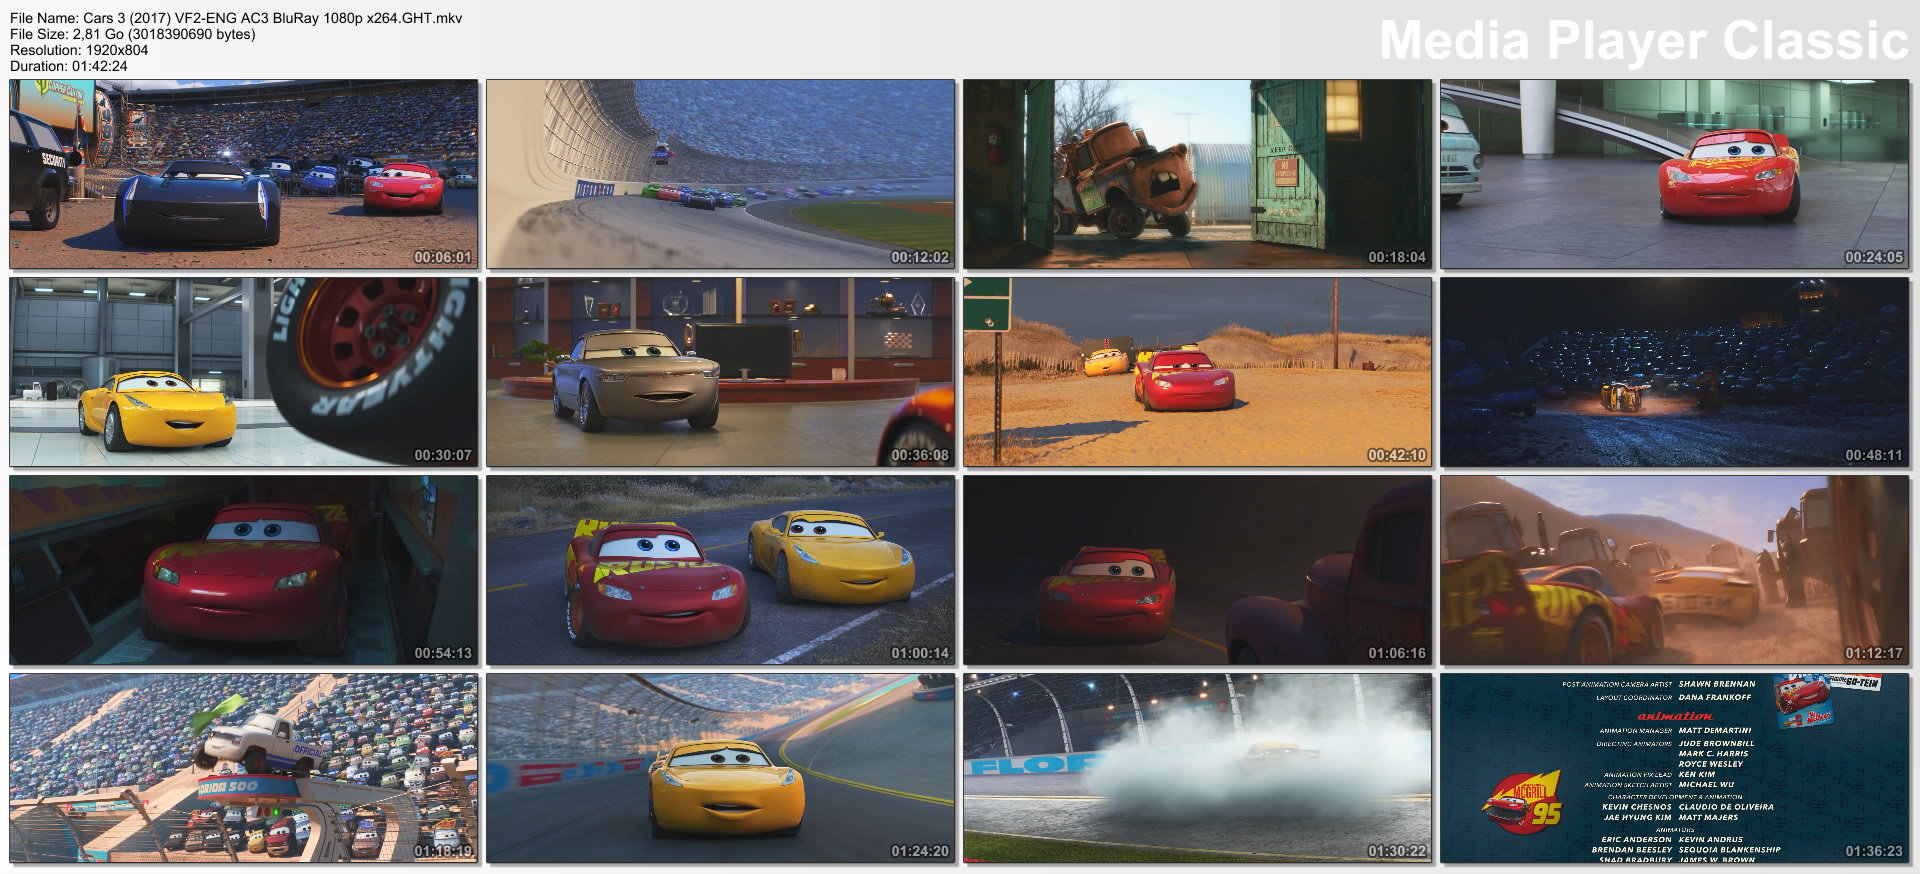 Cars 3 (2017) VF2-ENG AC3 BluRay 1080p x264.GHT